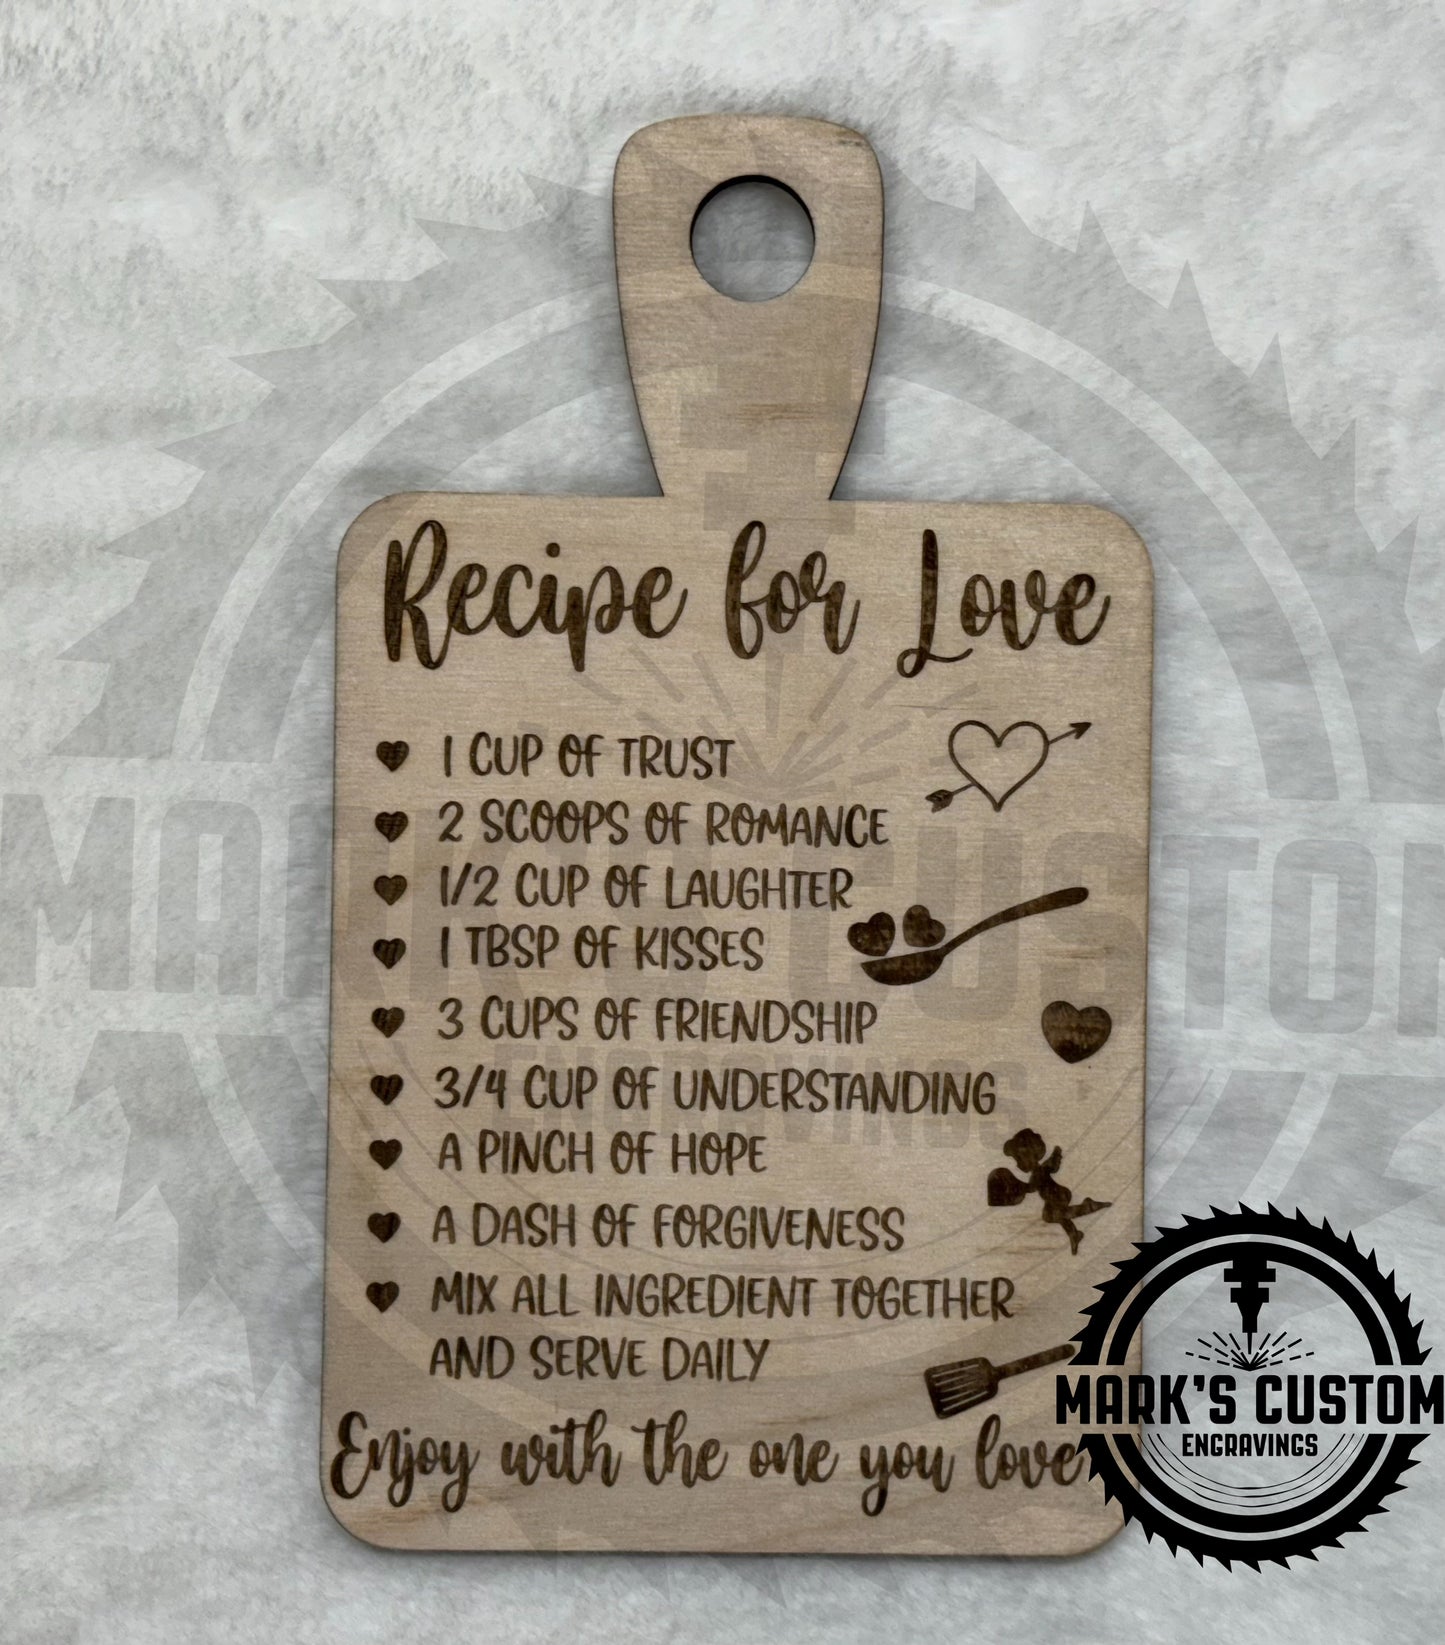 Recipe For Love